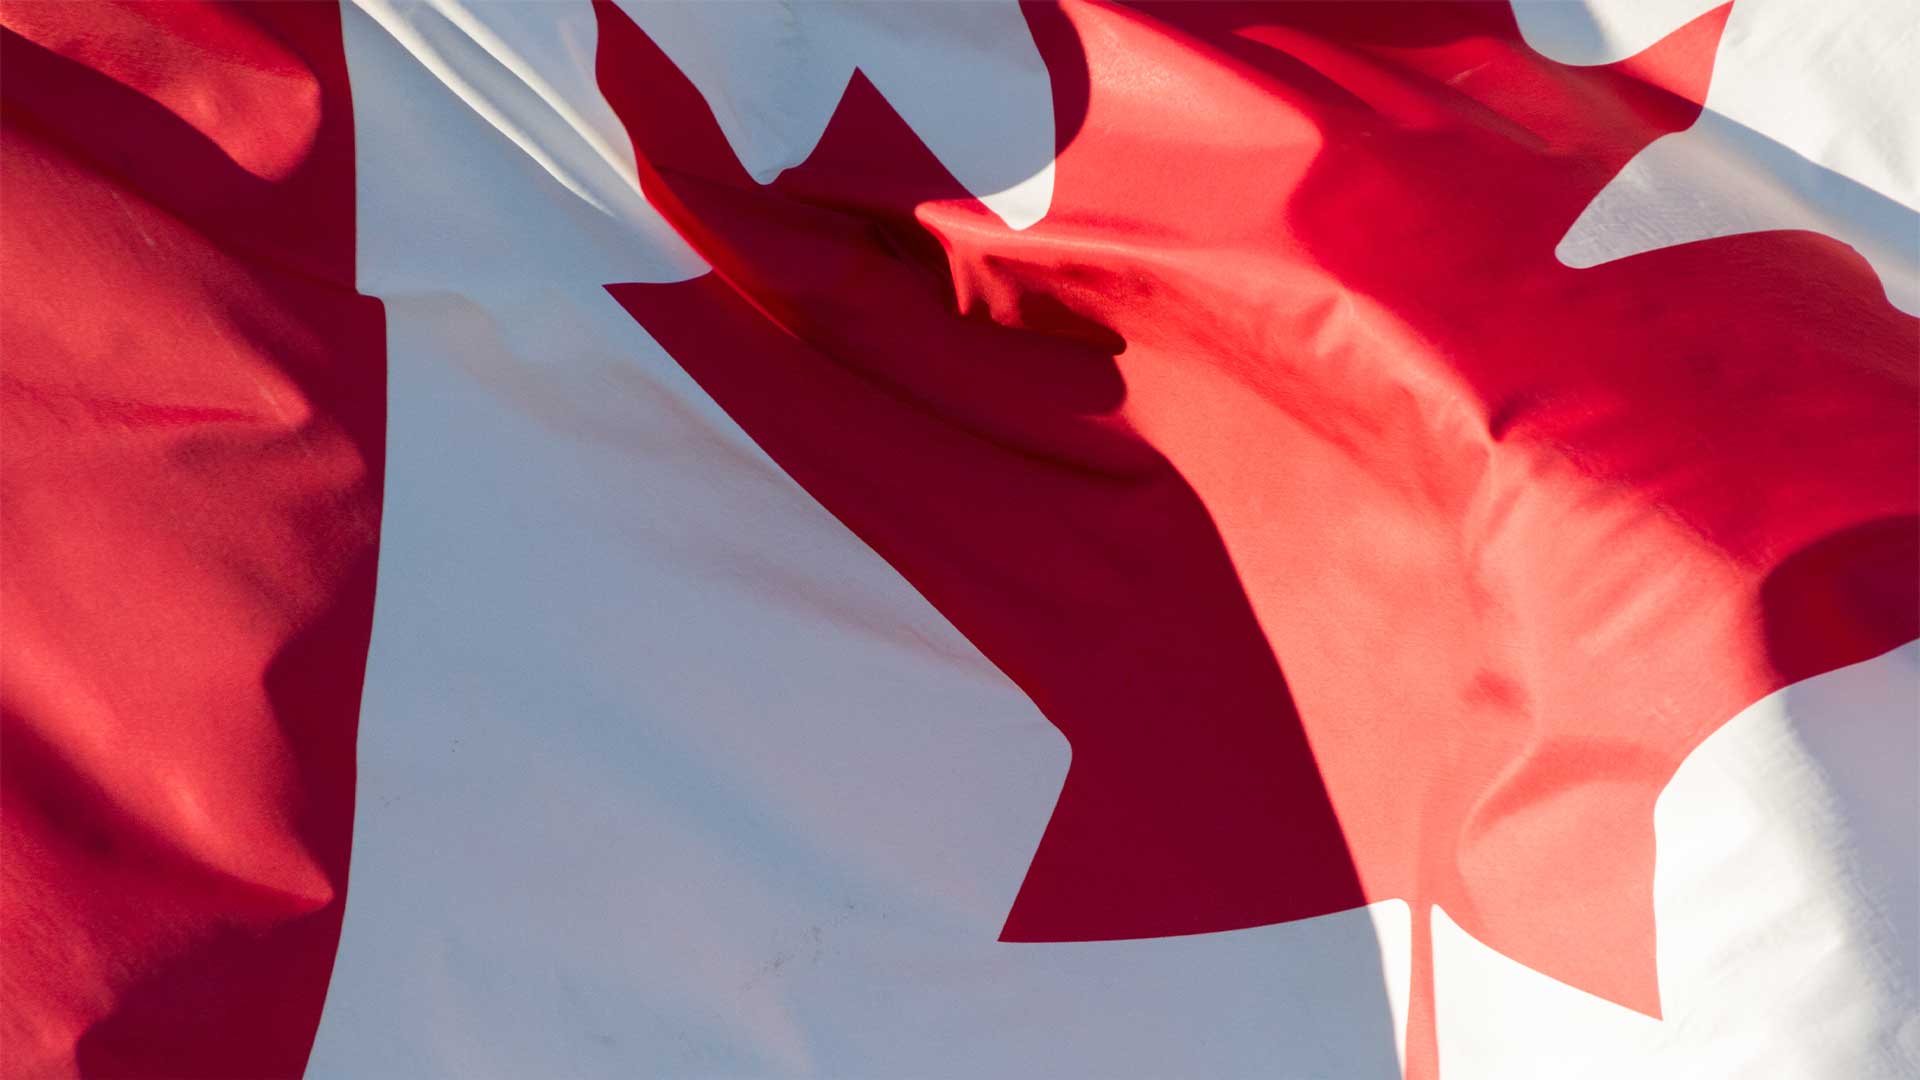 Les Canadiens méritent de connaître la vérité sur les travailleurs de remplacement étrangers